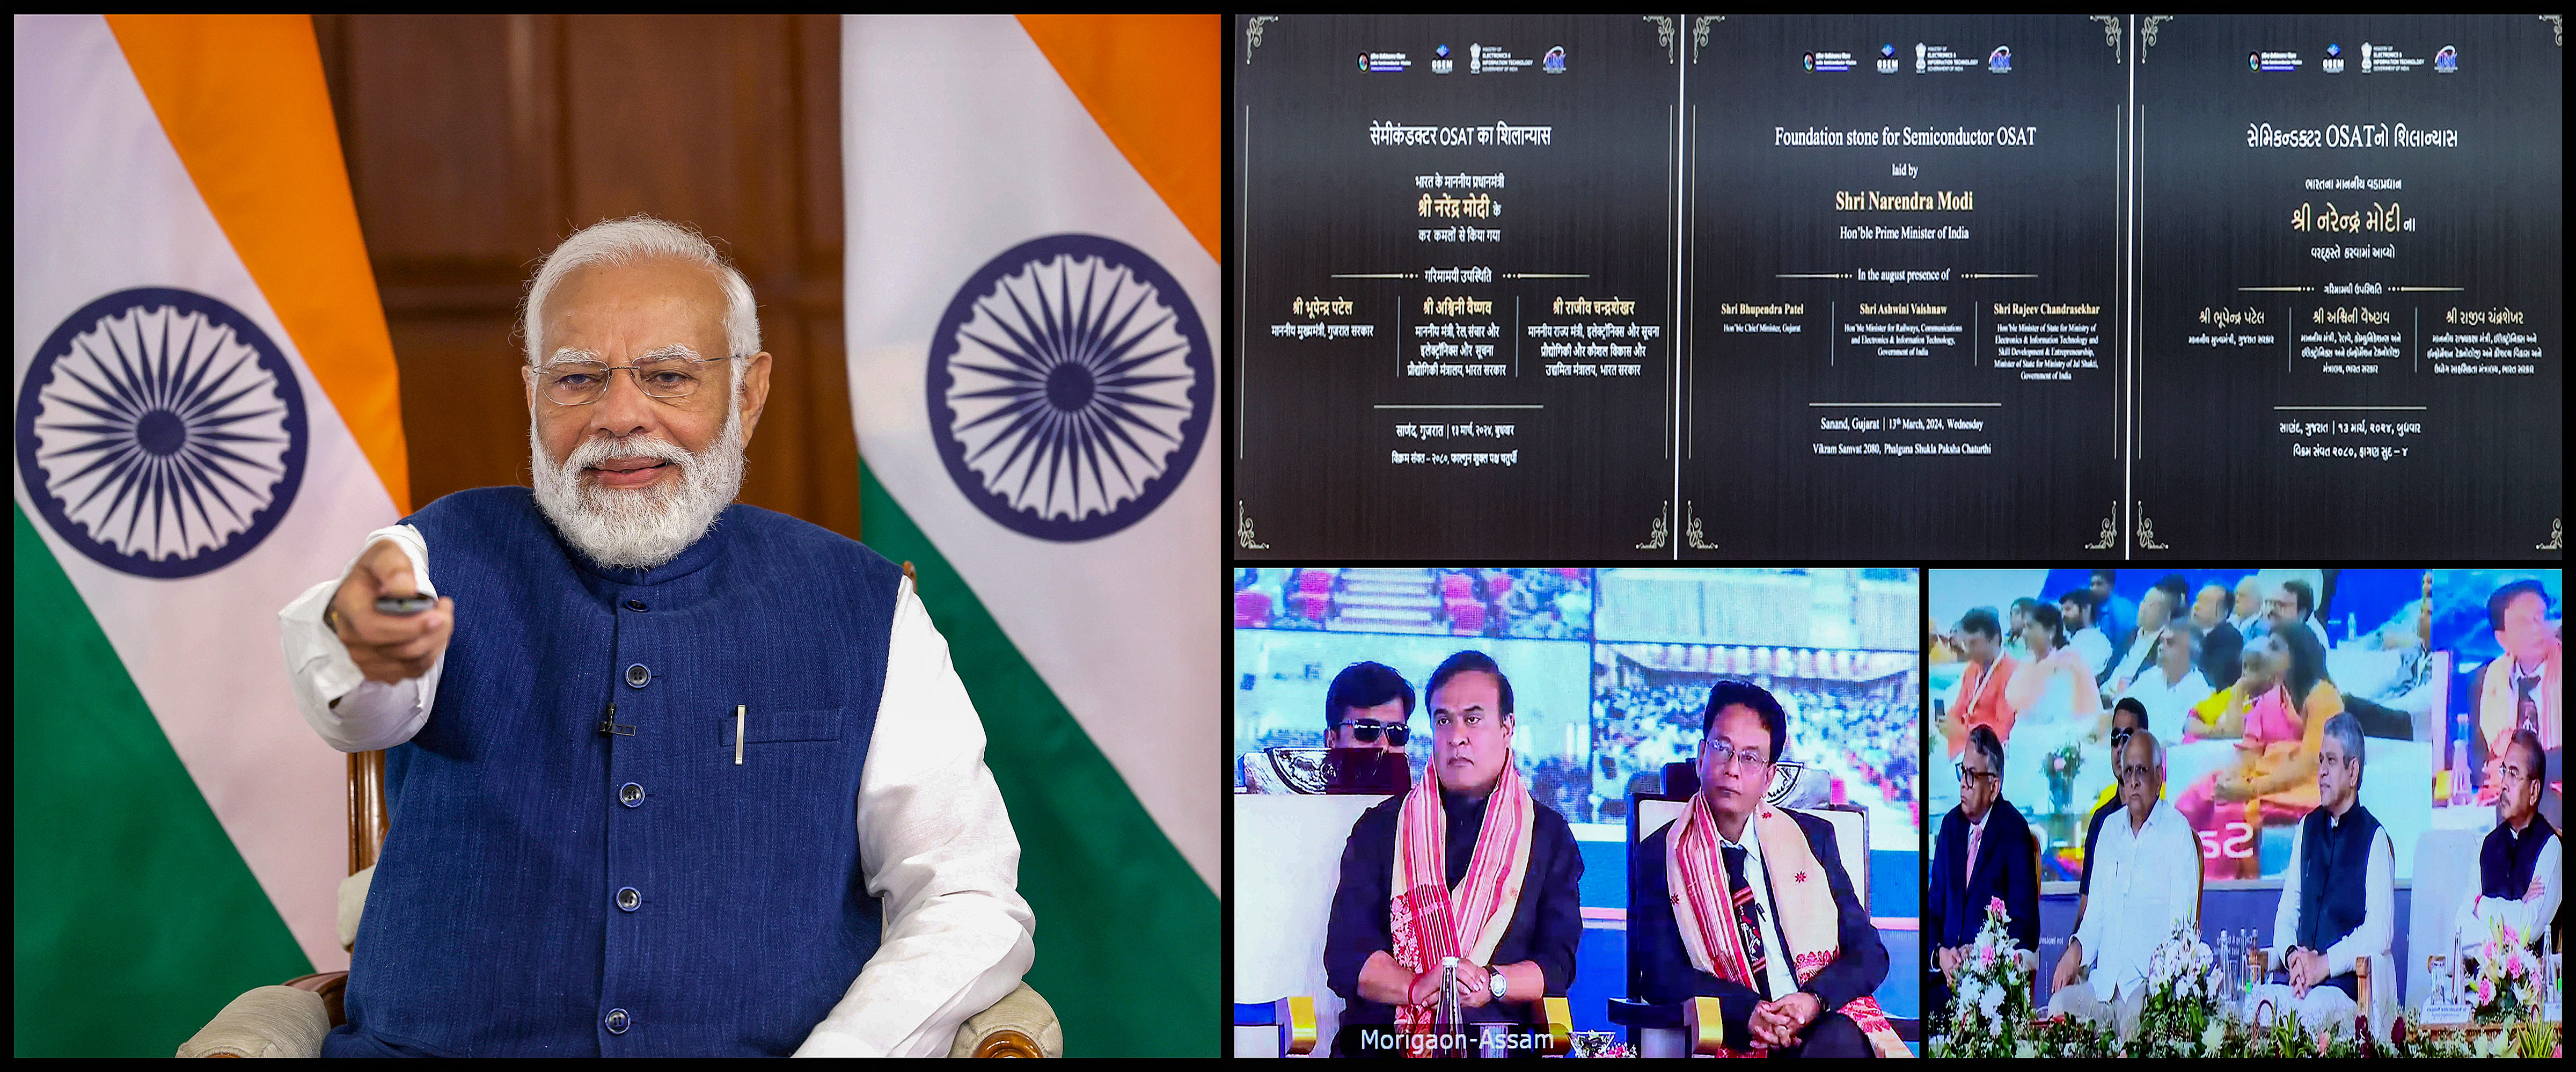 पीएम मोदी ने तीन सेमीकंडक्टर संयंत्रों की रखी आधारशिला, कहा- भारत अपने वादों को पूरा करता है 